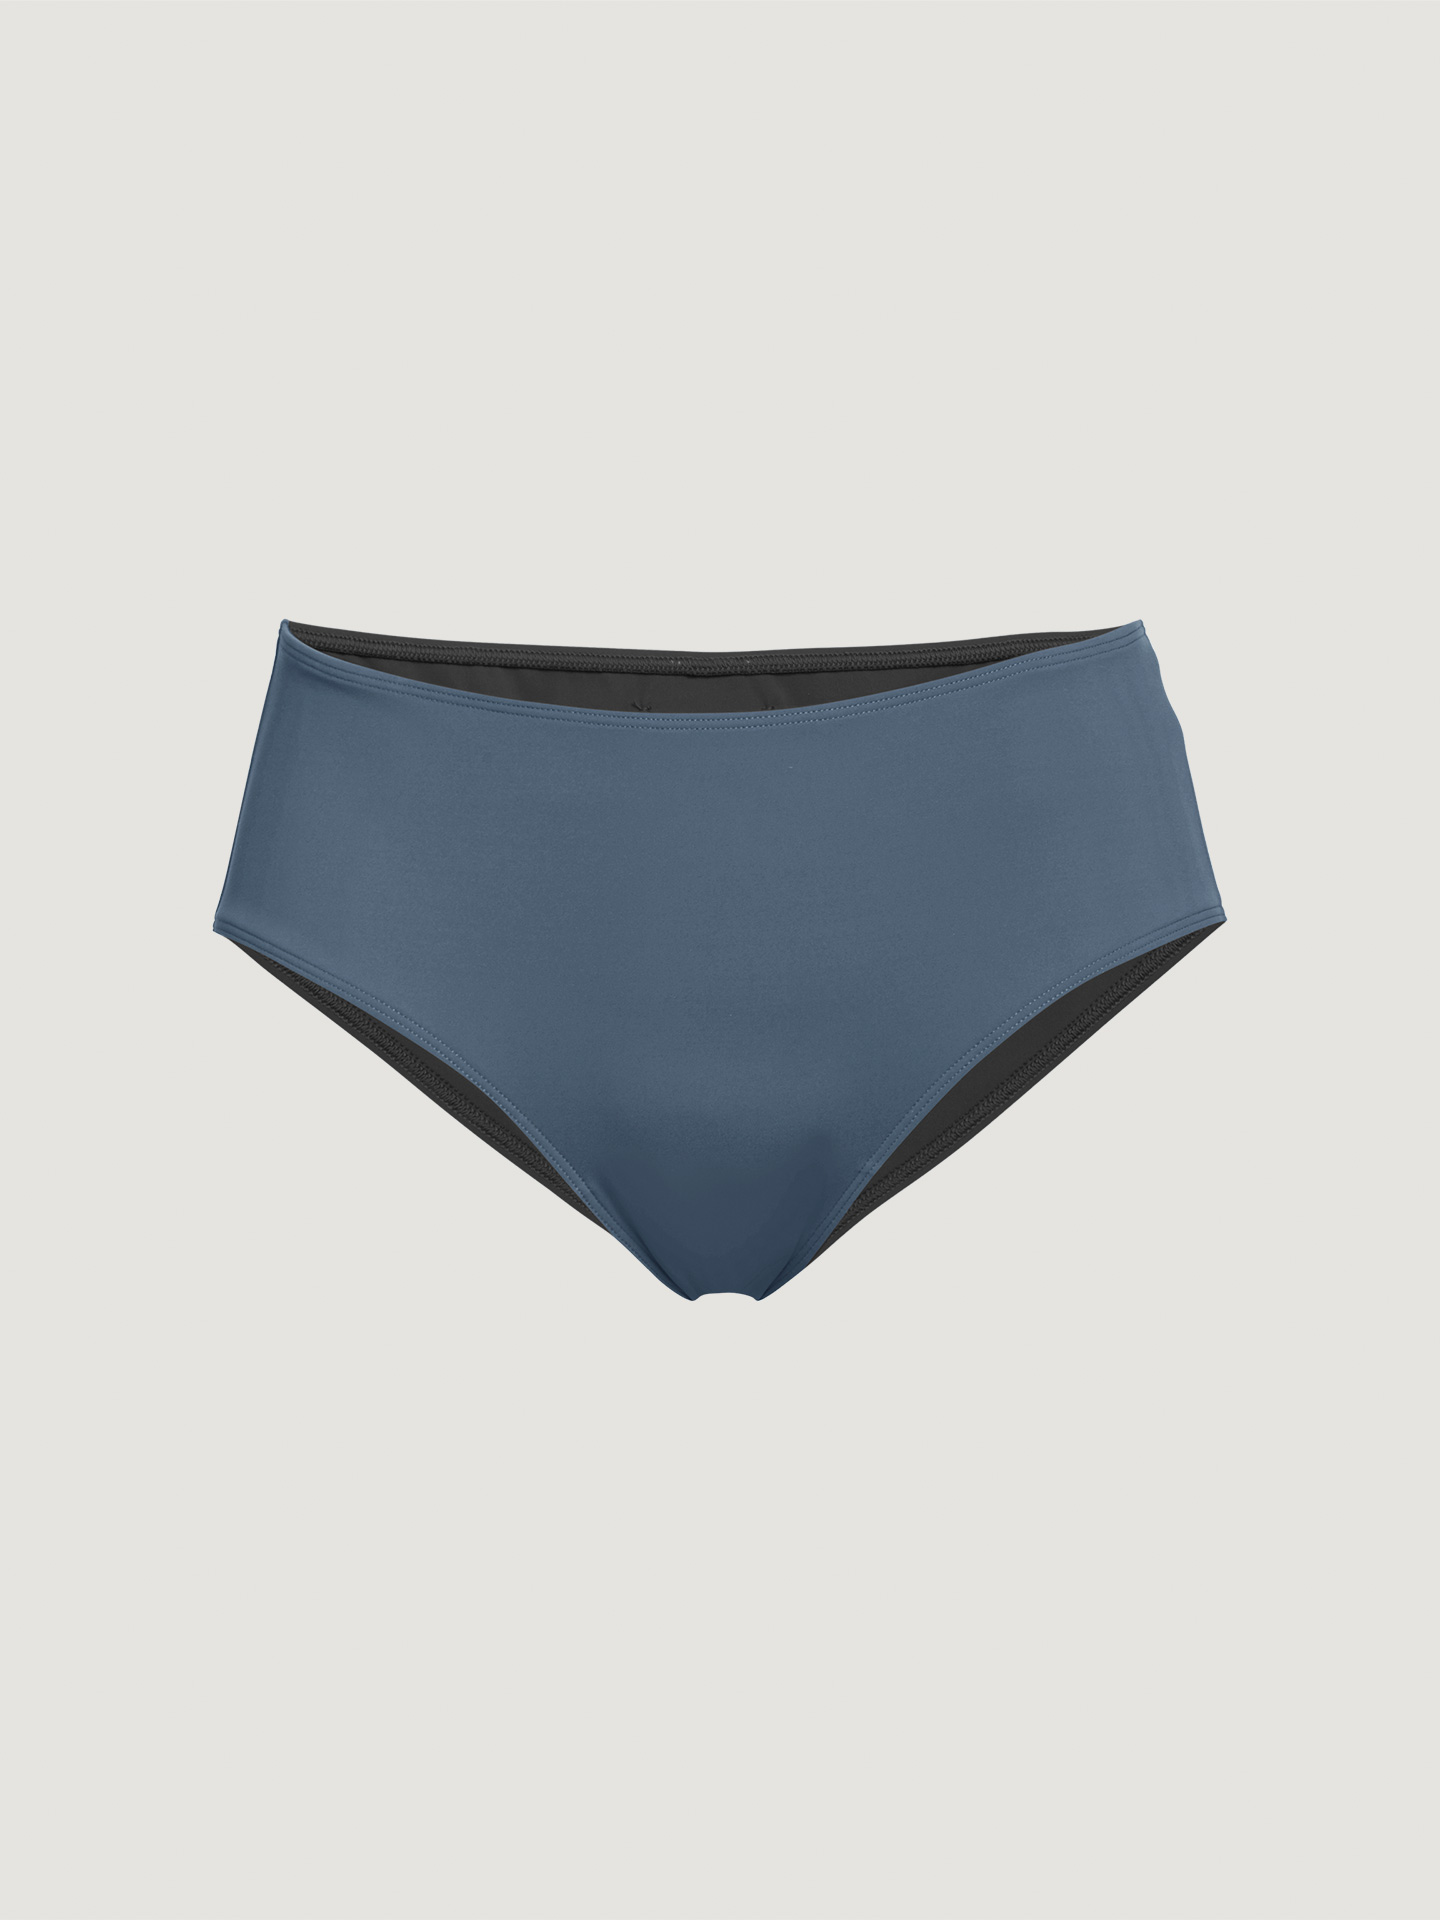 Wolford - Reversible Beach Shorts, Frau, pacific blue/black, Größe: XS günstig online kaufen